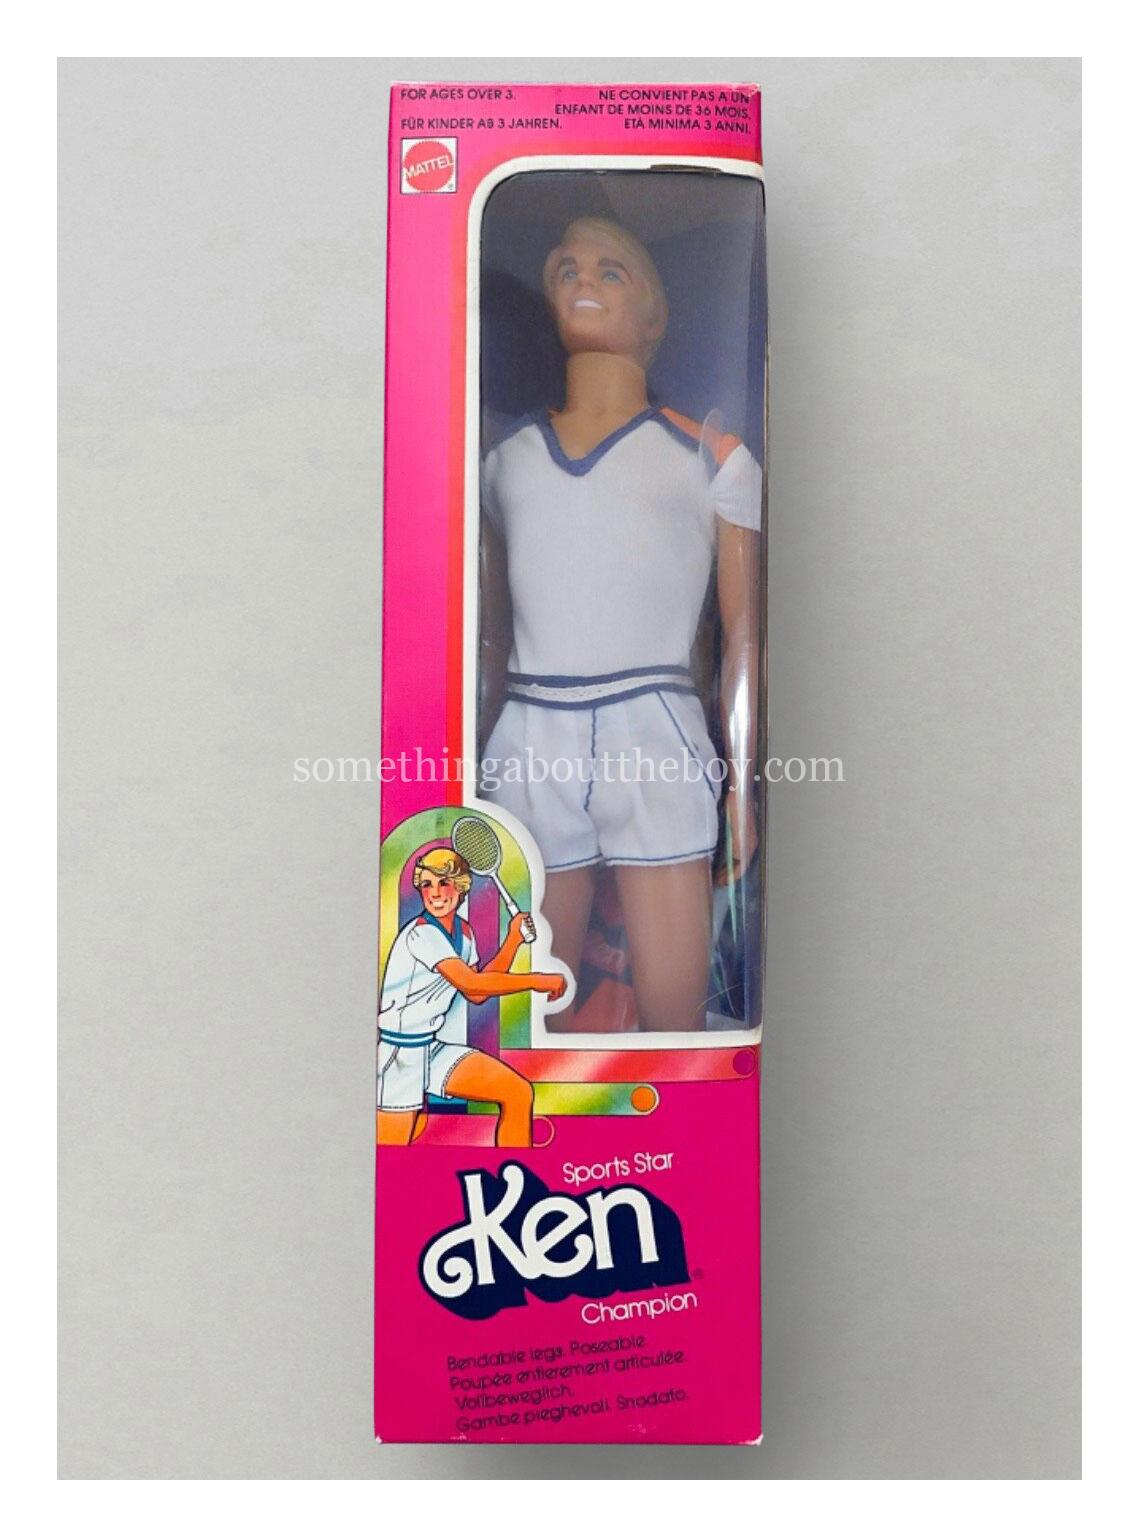 1980 #1336 Sports Star Ken in European packaging